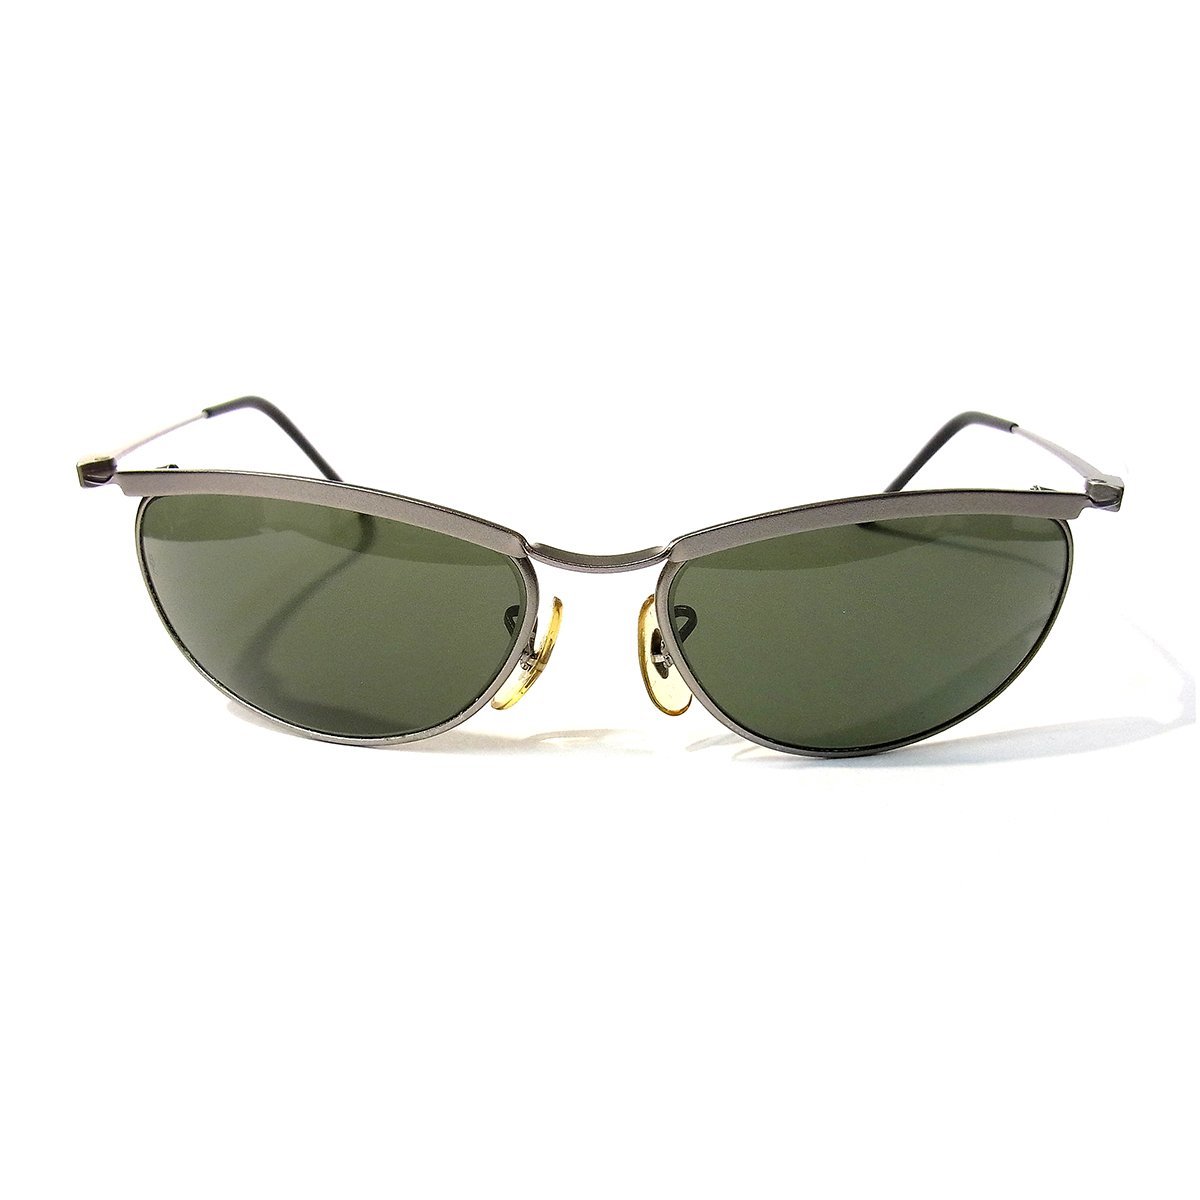  прекрасный товар RayBan солнцезащитные очки W2566 NPAS серебряный цвет оттенок зеленого линзы Ray-Ban =